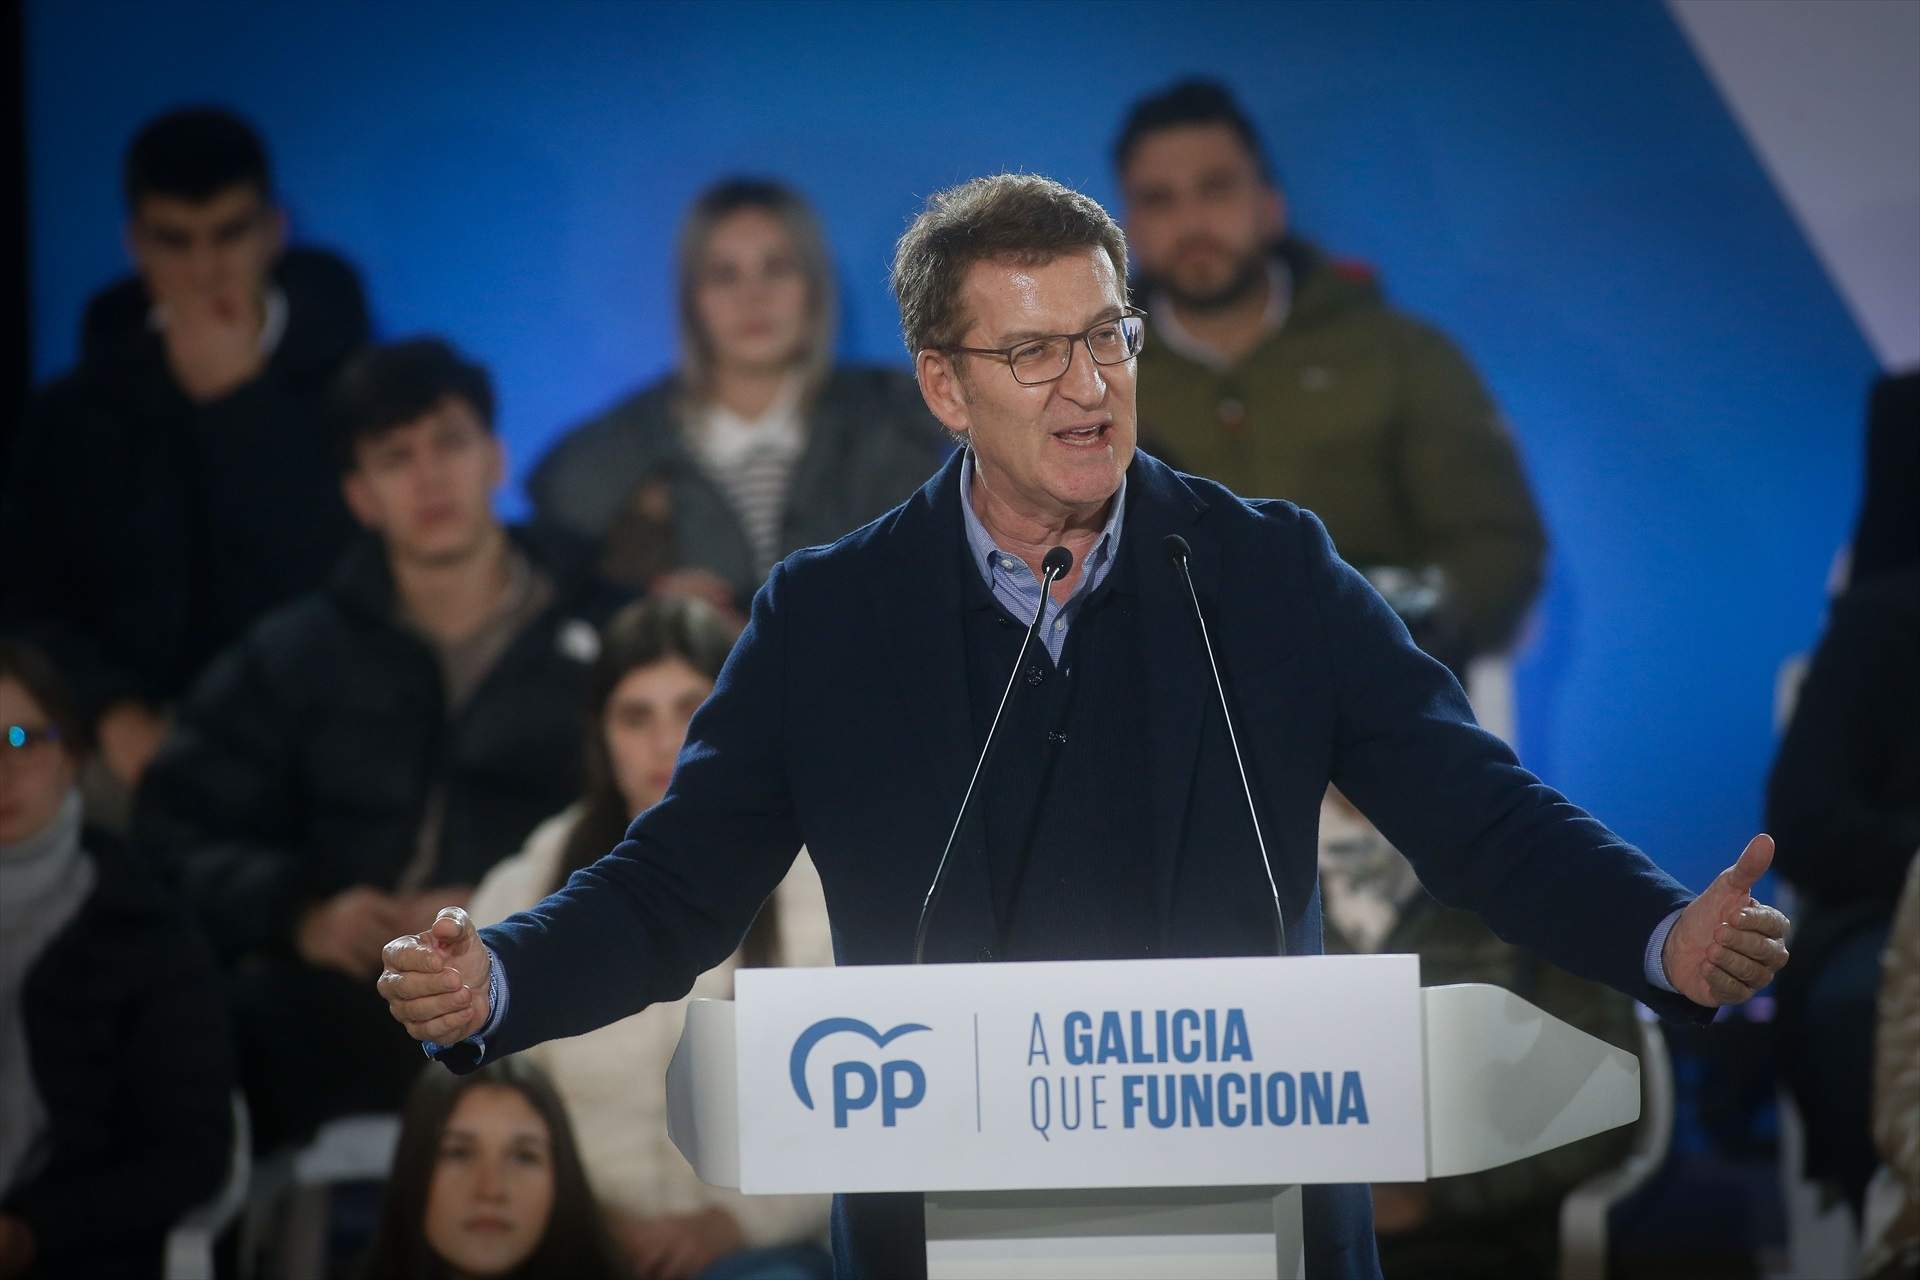 Feijóo parla de l'indult a Puigdemont sense aclarir si el PP el contemplava: "No es donen les condicions"